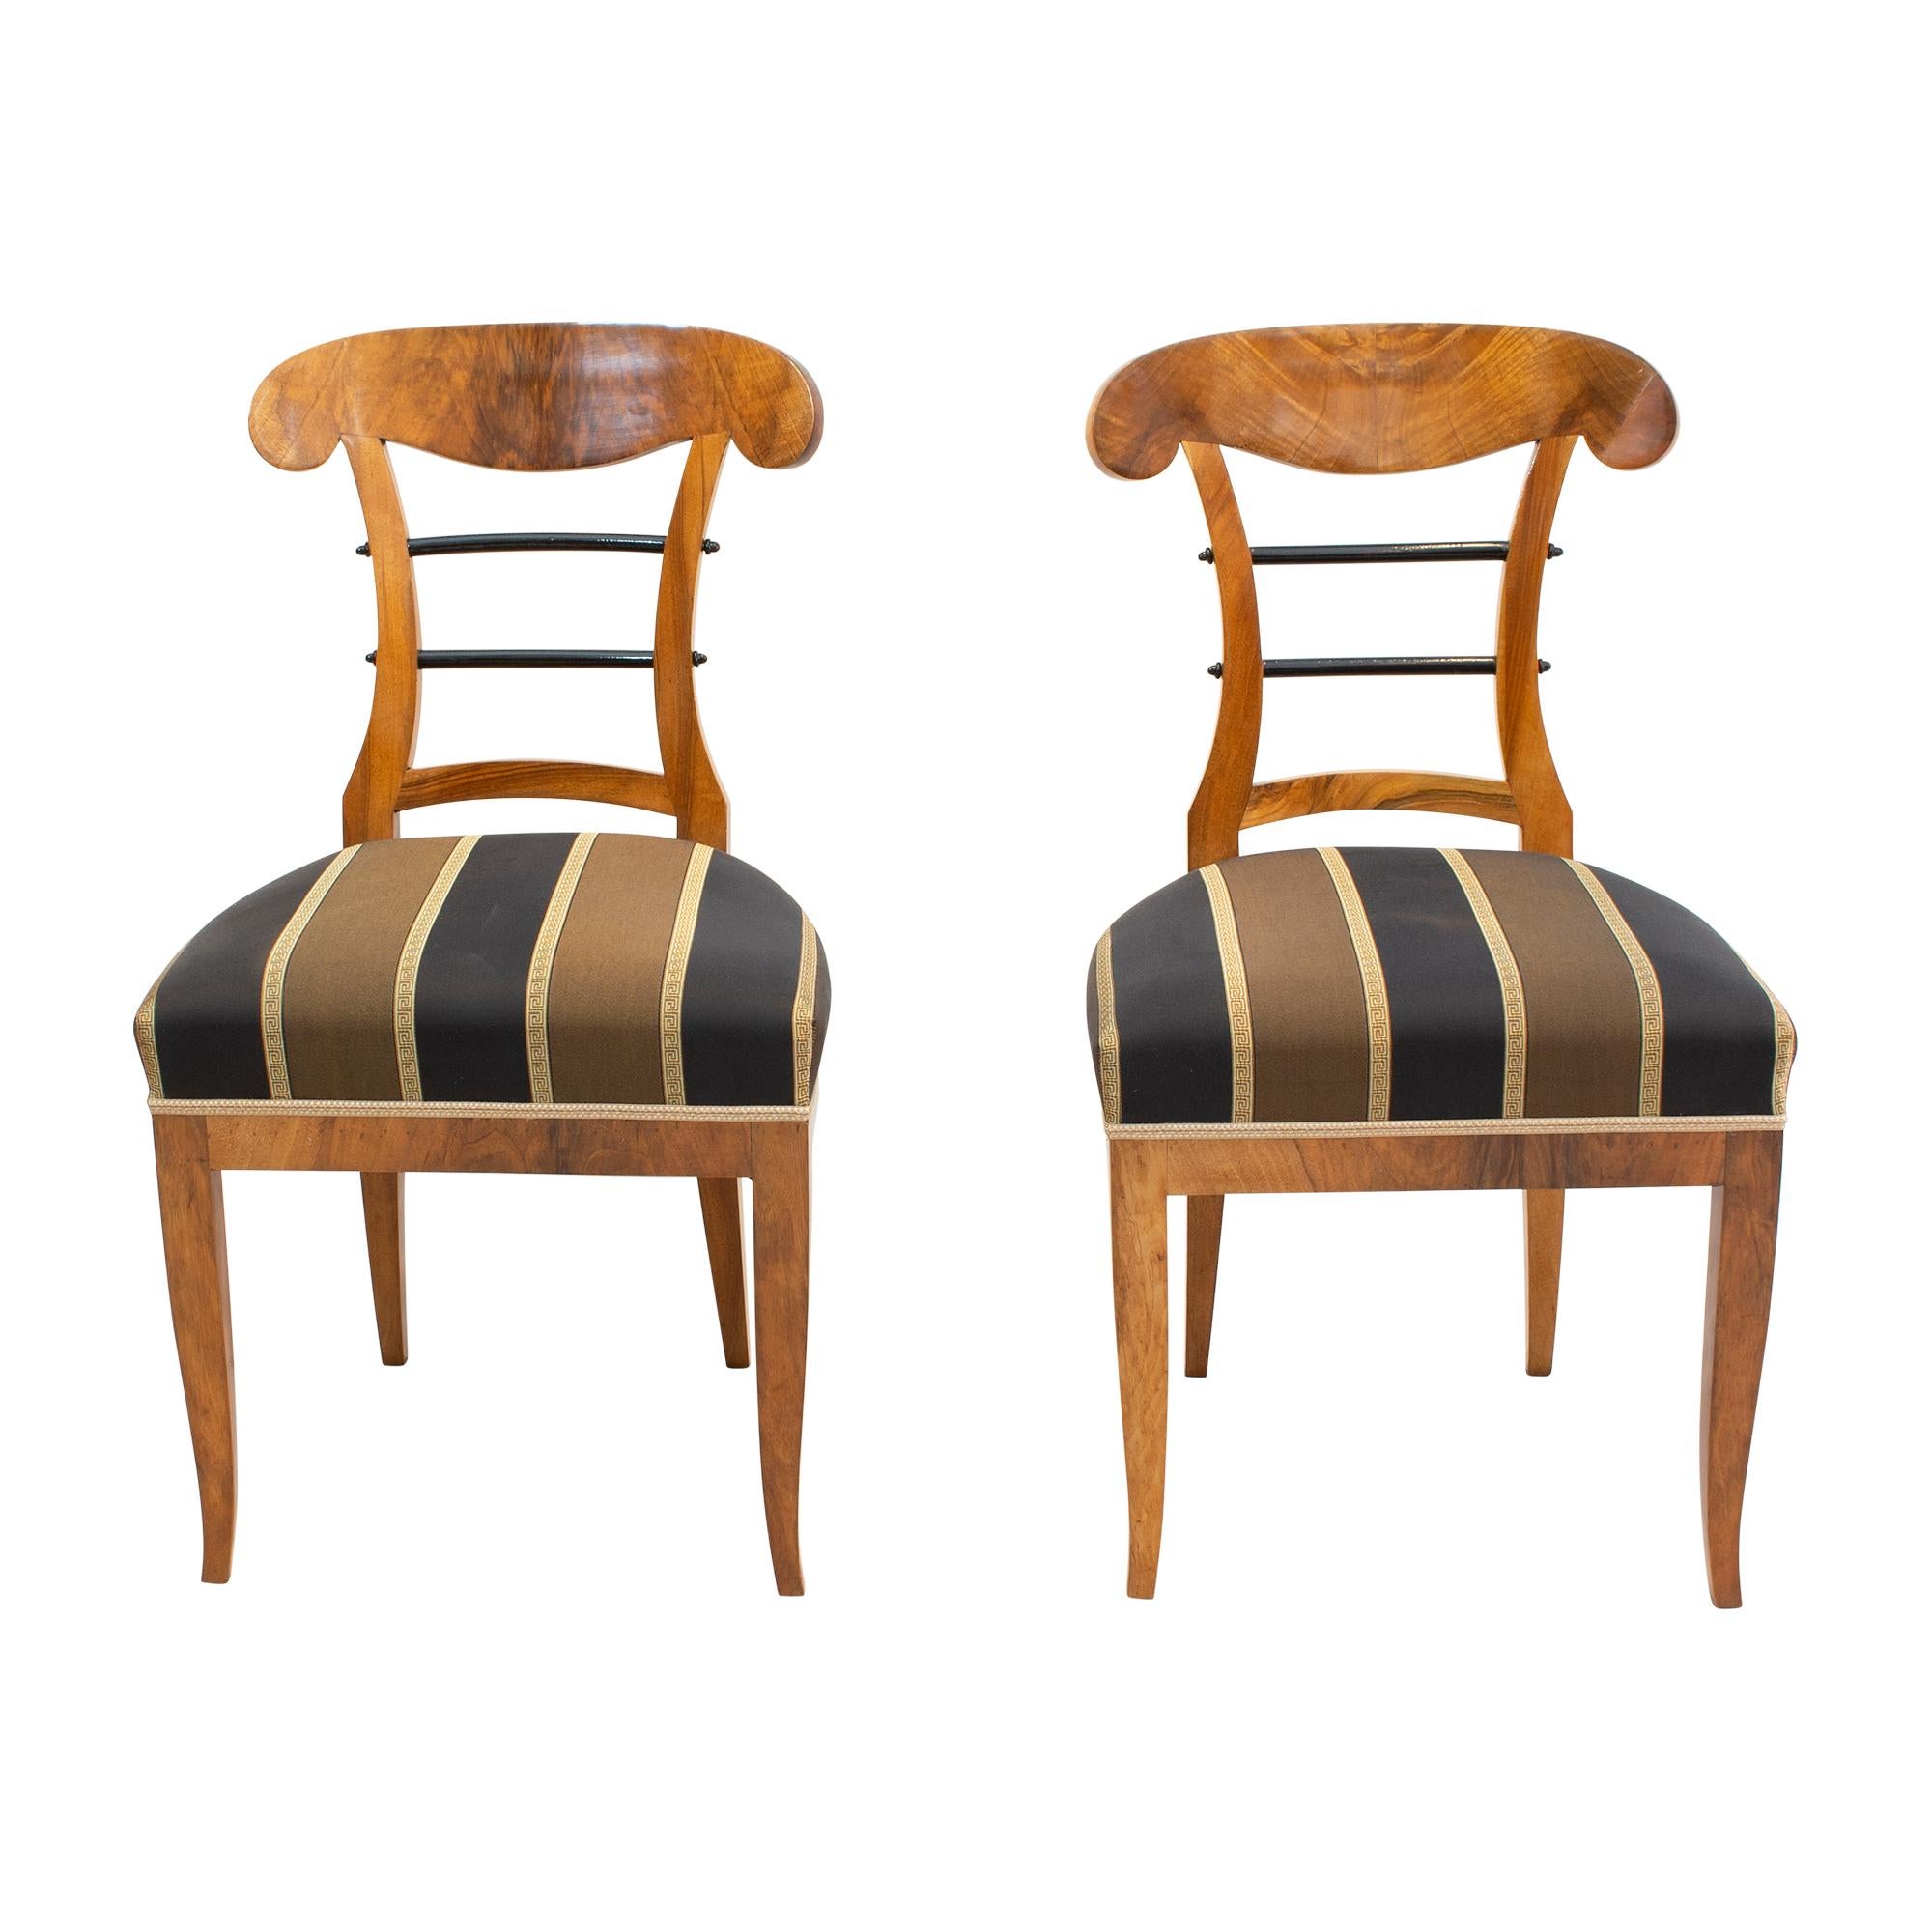 Belle paire de chaises à pelle de l'époque Biedermeier, fabriquées vers 1825 en noyer épais et placage de noyer sur bois d'épicéa. La chaise a été retapissée et recouverte d'un nouveau tissu. En très bon état restauré. 

Veuillez noter que nous